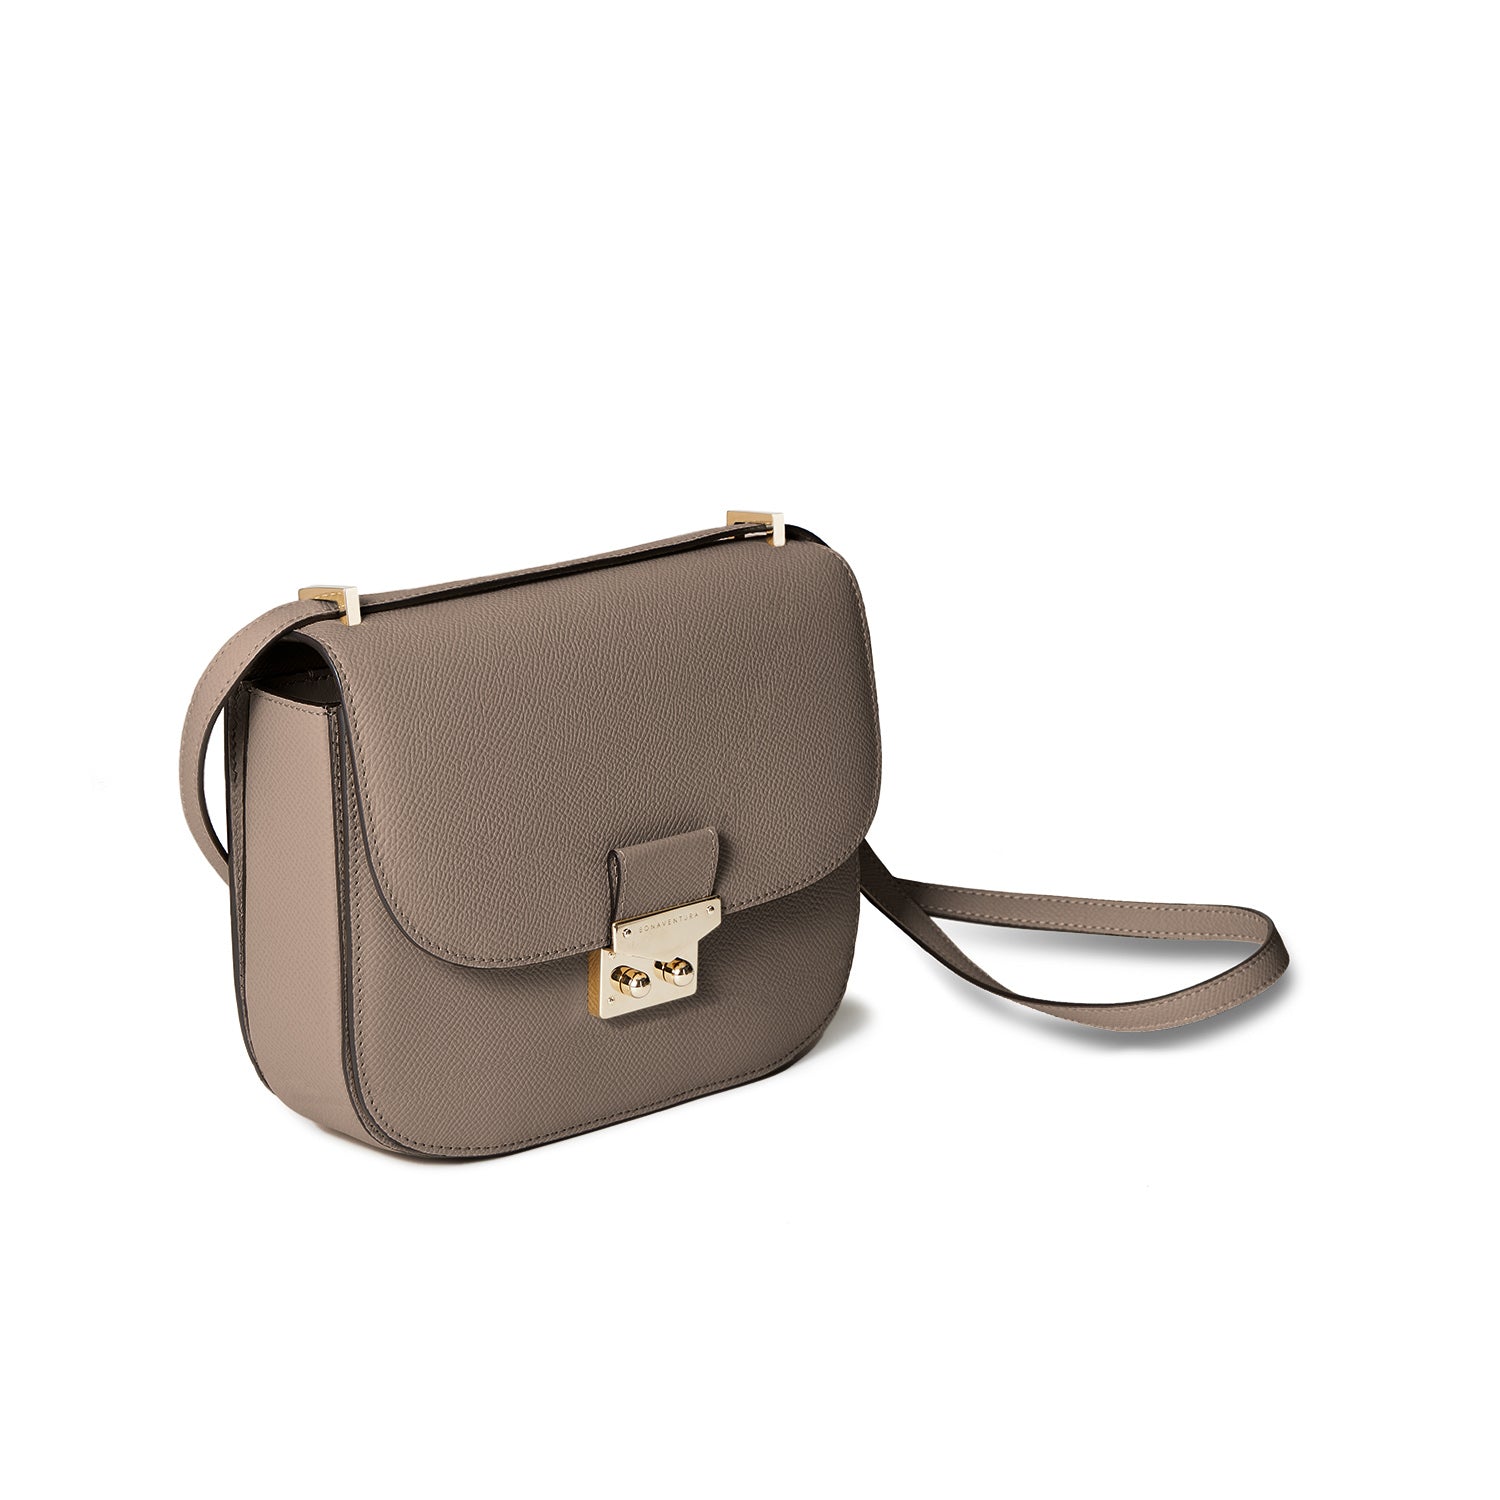 Stella shoulder bag in Noblesse leather